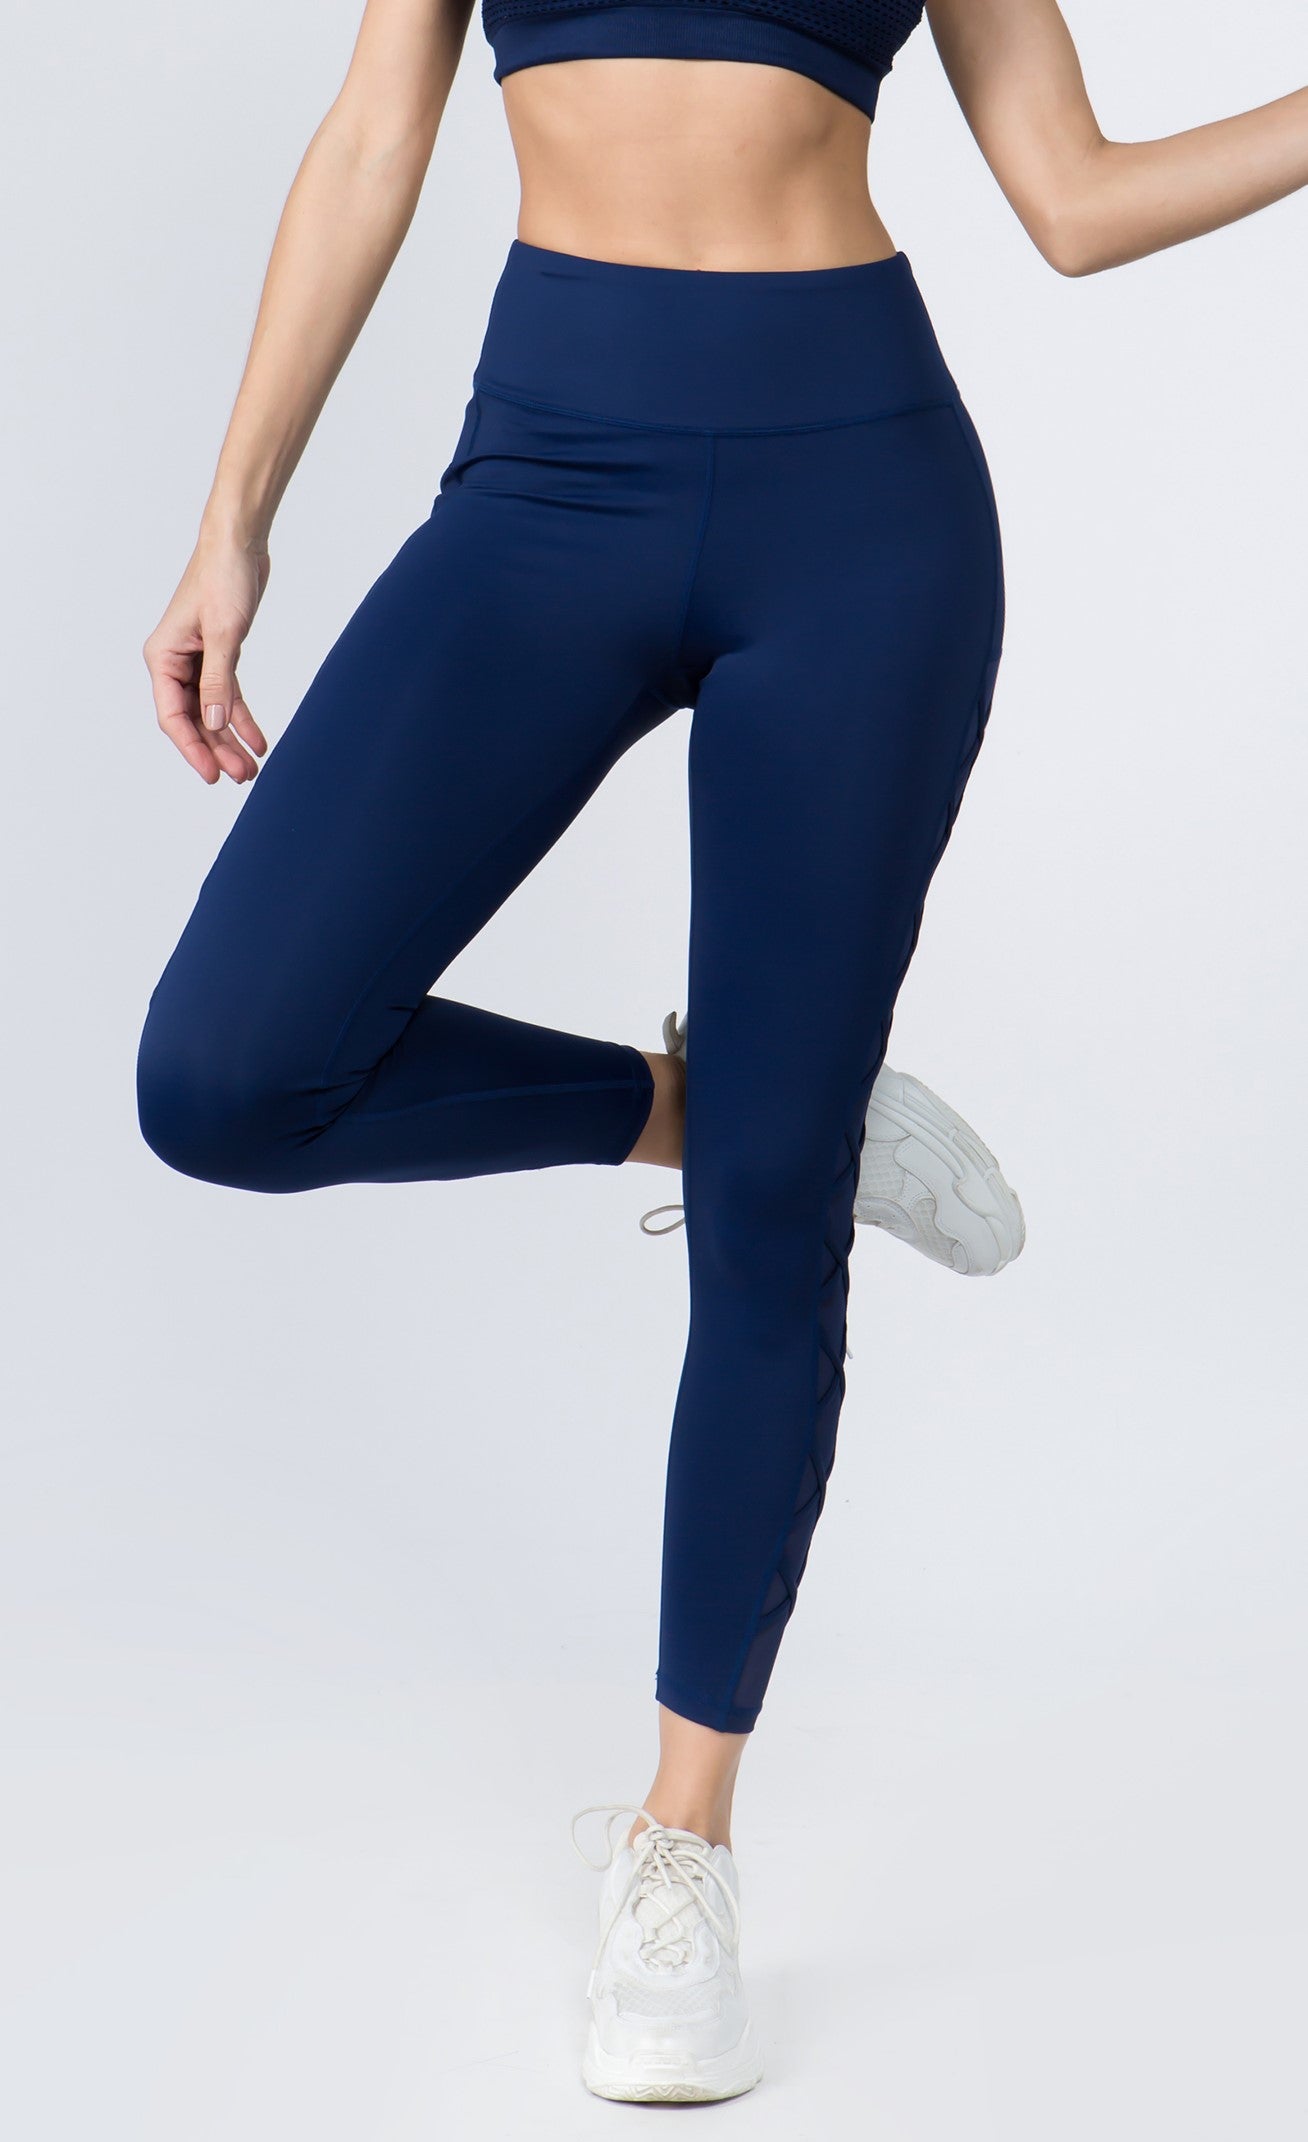 Lace Up Side Leggings Stretch Yoga Lounge Capri Pants Gym Workout Gray  S/M/L | eBay